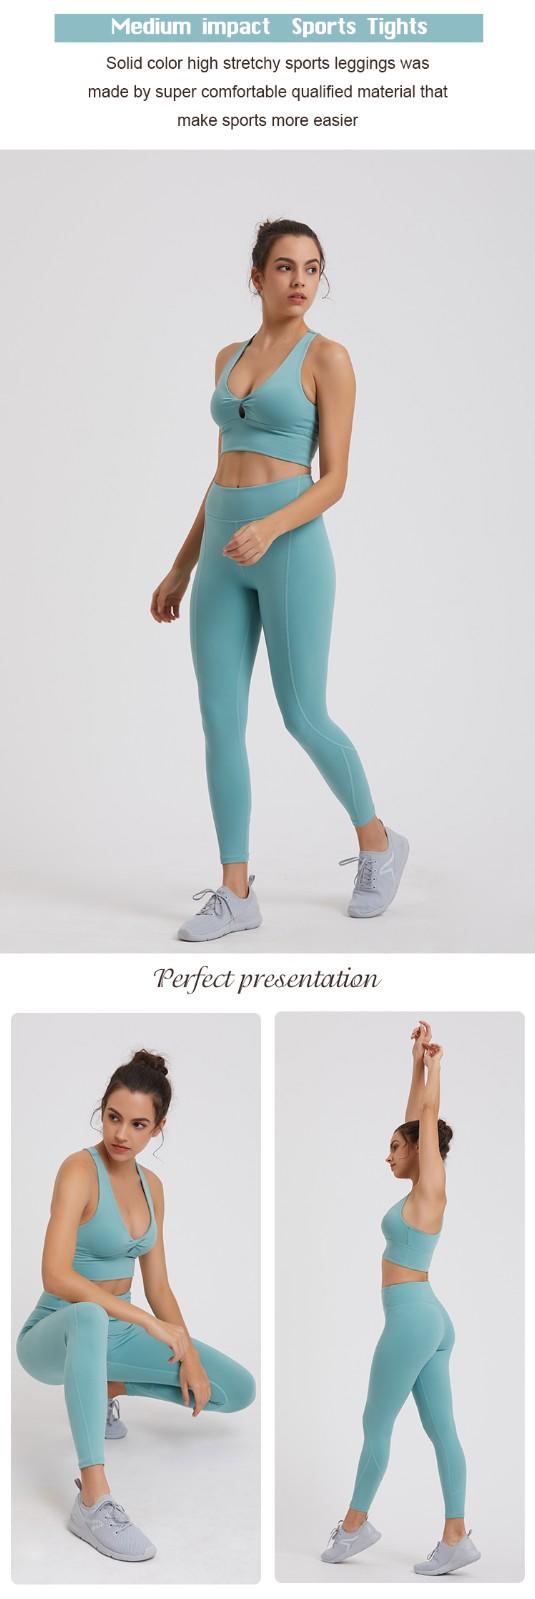 INGOR yoga leggings outfit marketing for sport